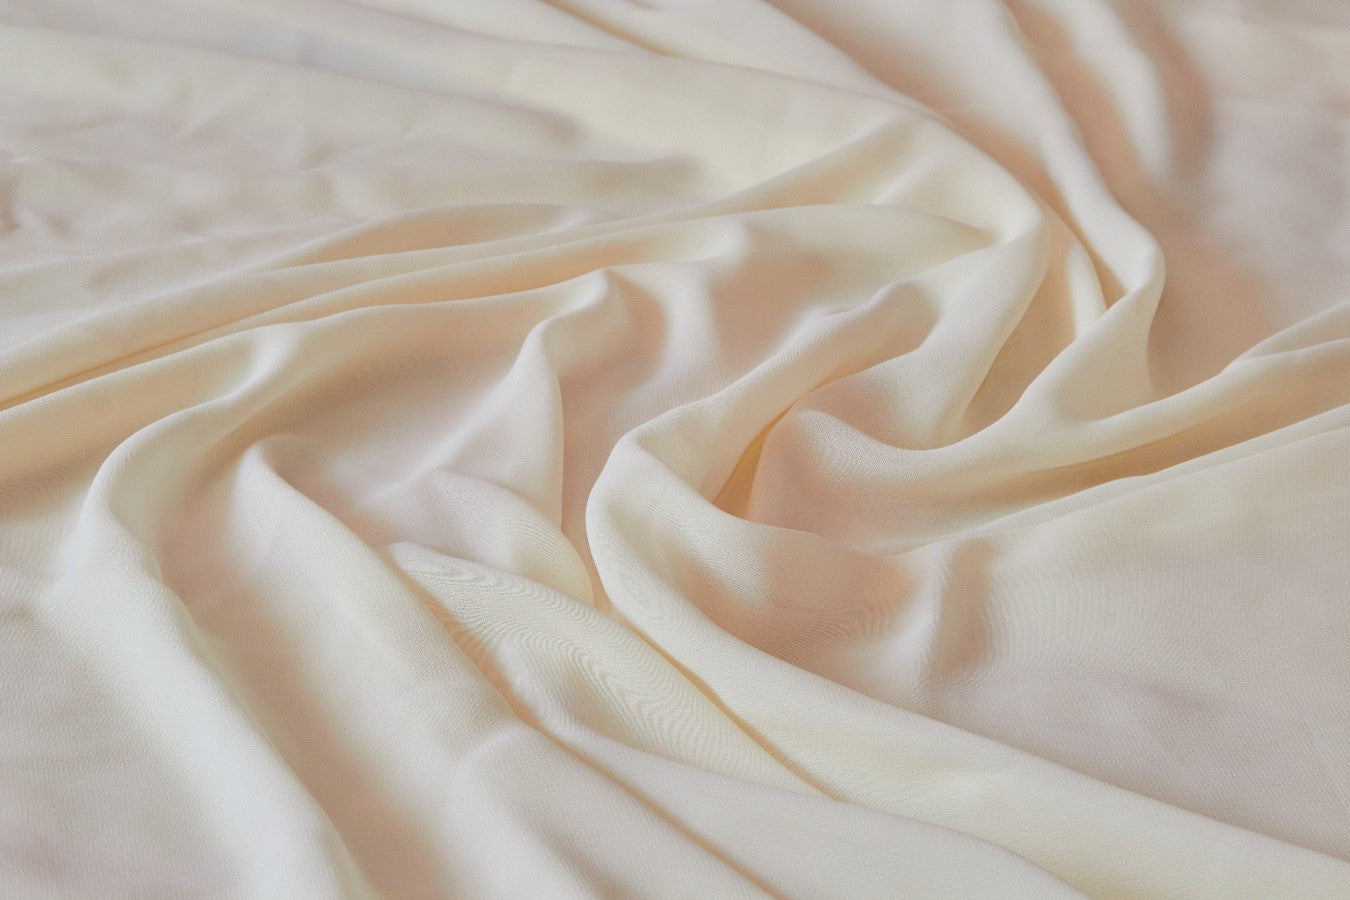 ¿Cuál es el número de hilos indicado para cada tipo de sábana?